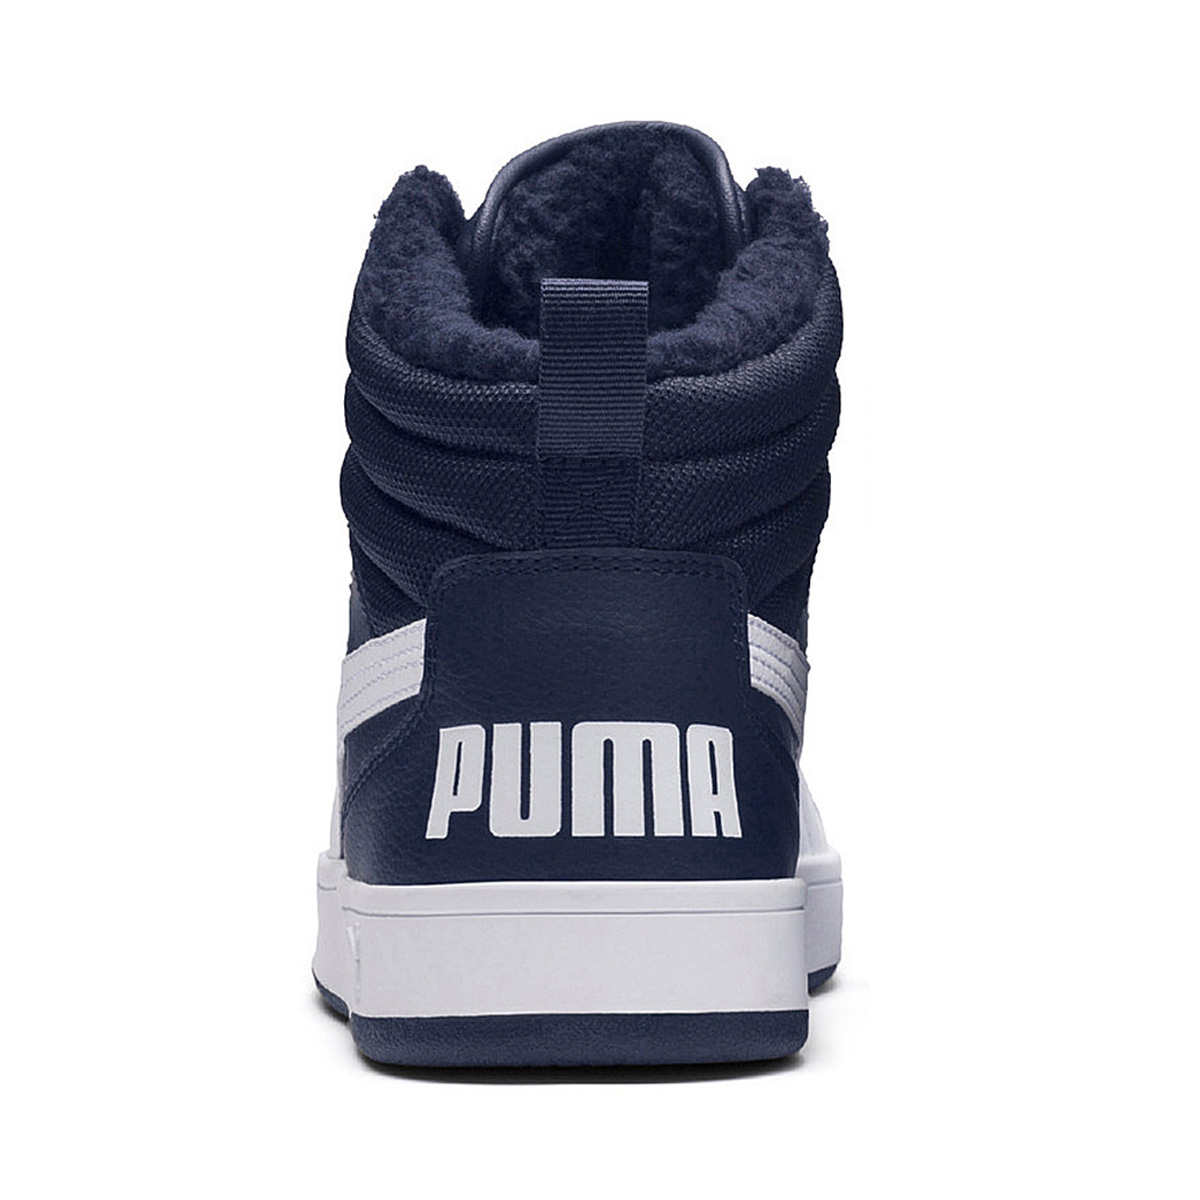 Puma Rebound Street V2 Fur Winterstiefel Boots Herren blau gefüttert warm